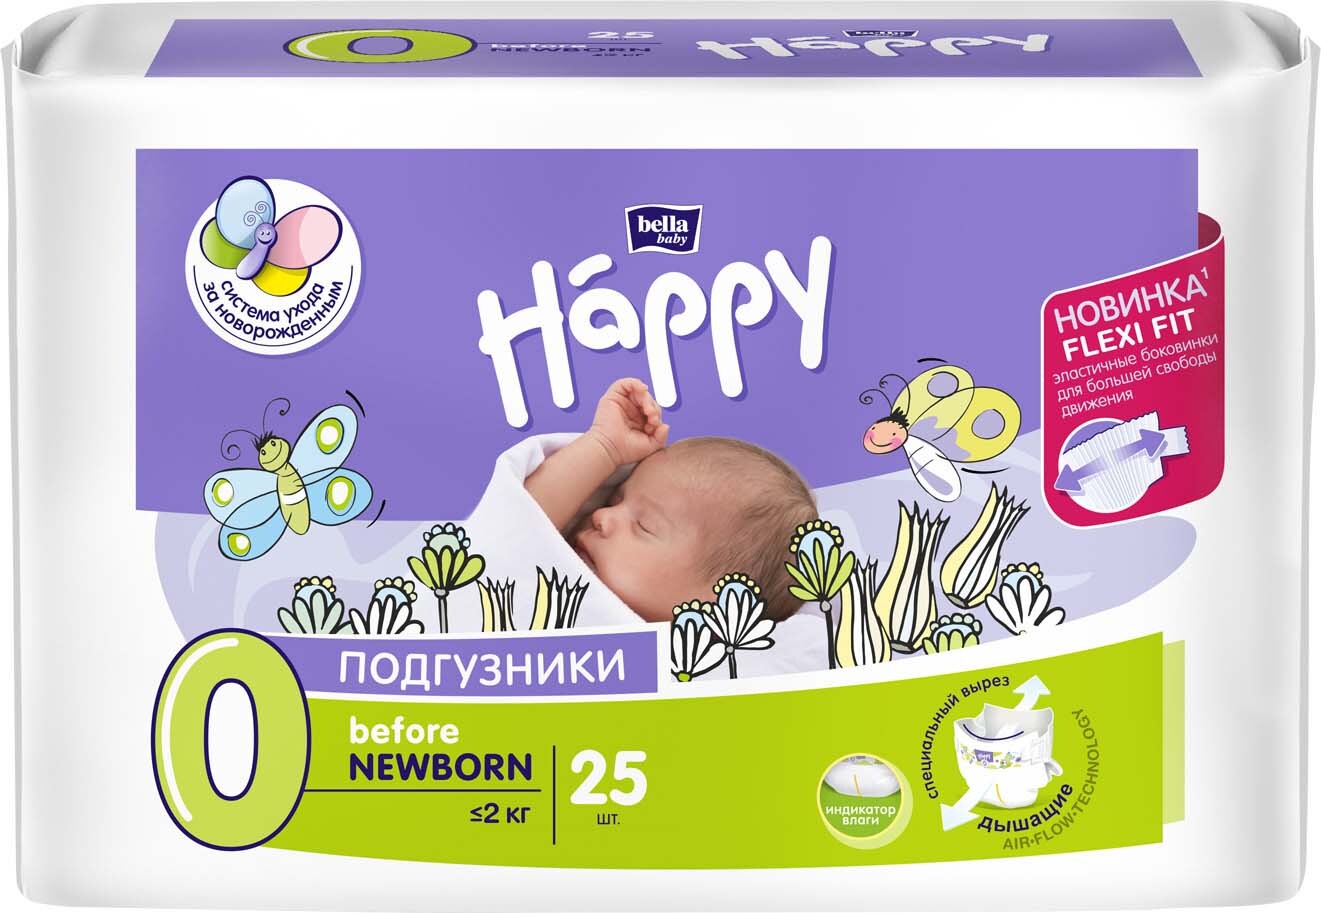 Подгузники гигиенические для детей bella baby Happy before NEWBORN по 25шт  BB-054-BF25-004 - Пенза 